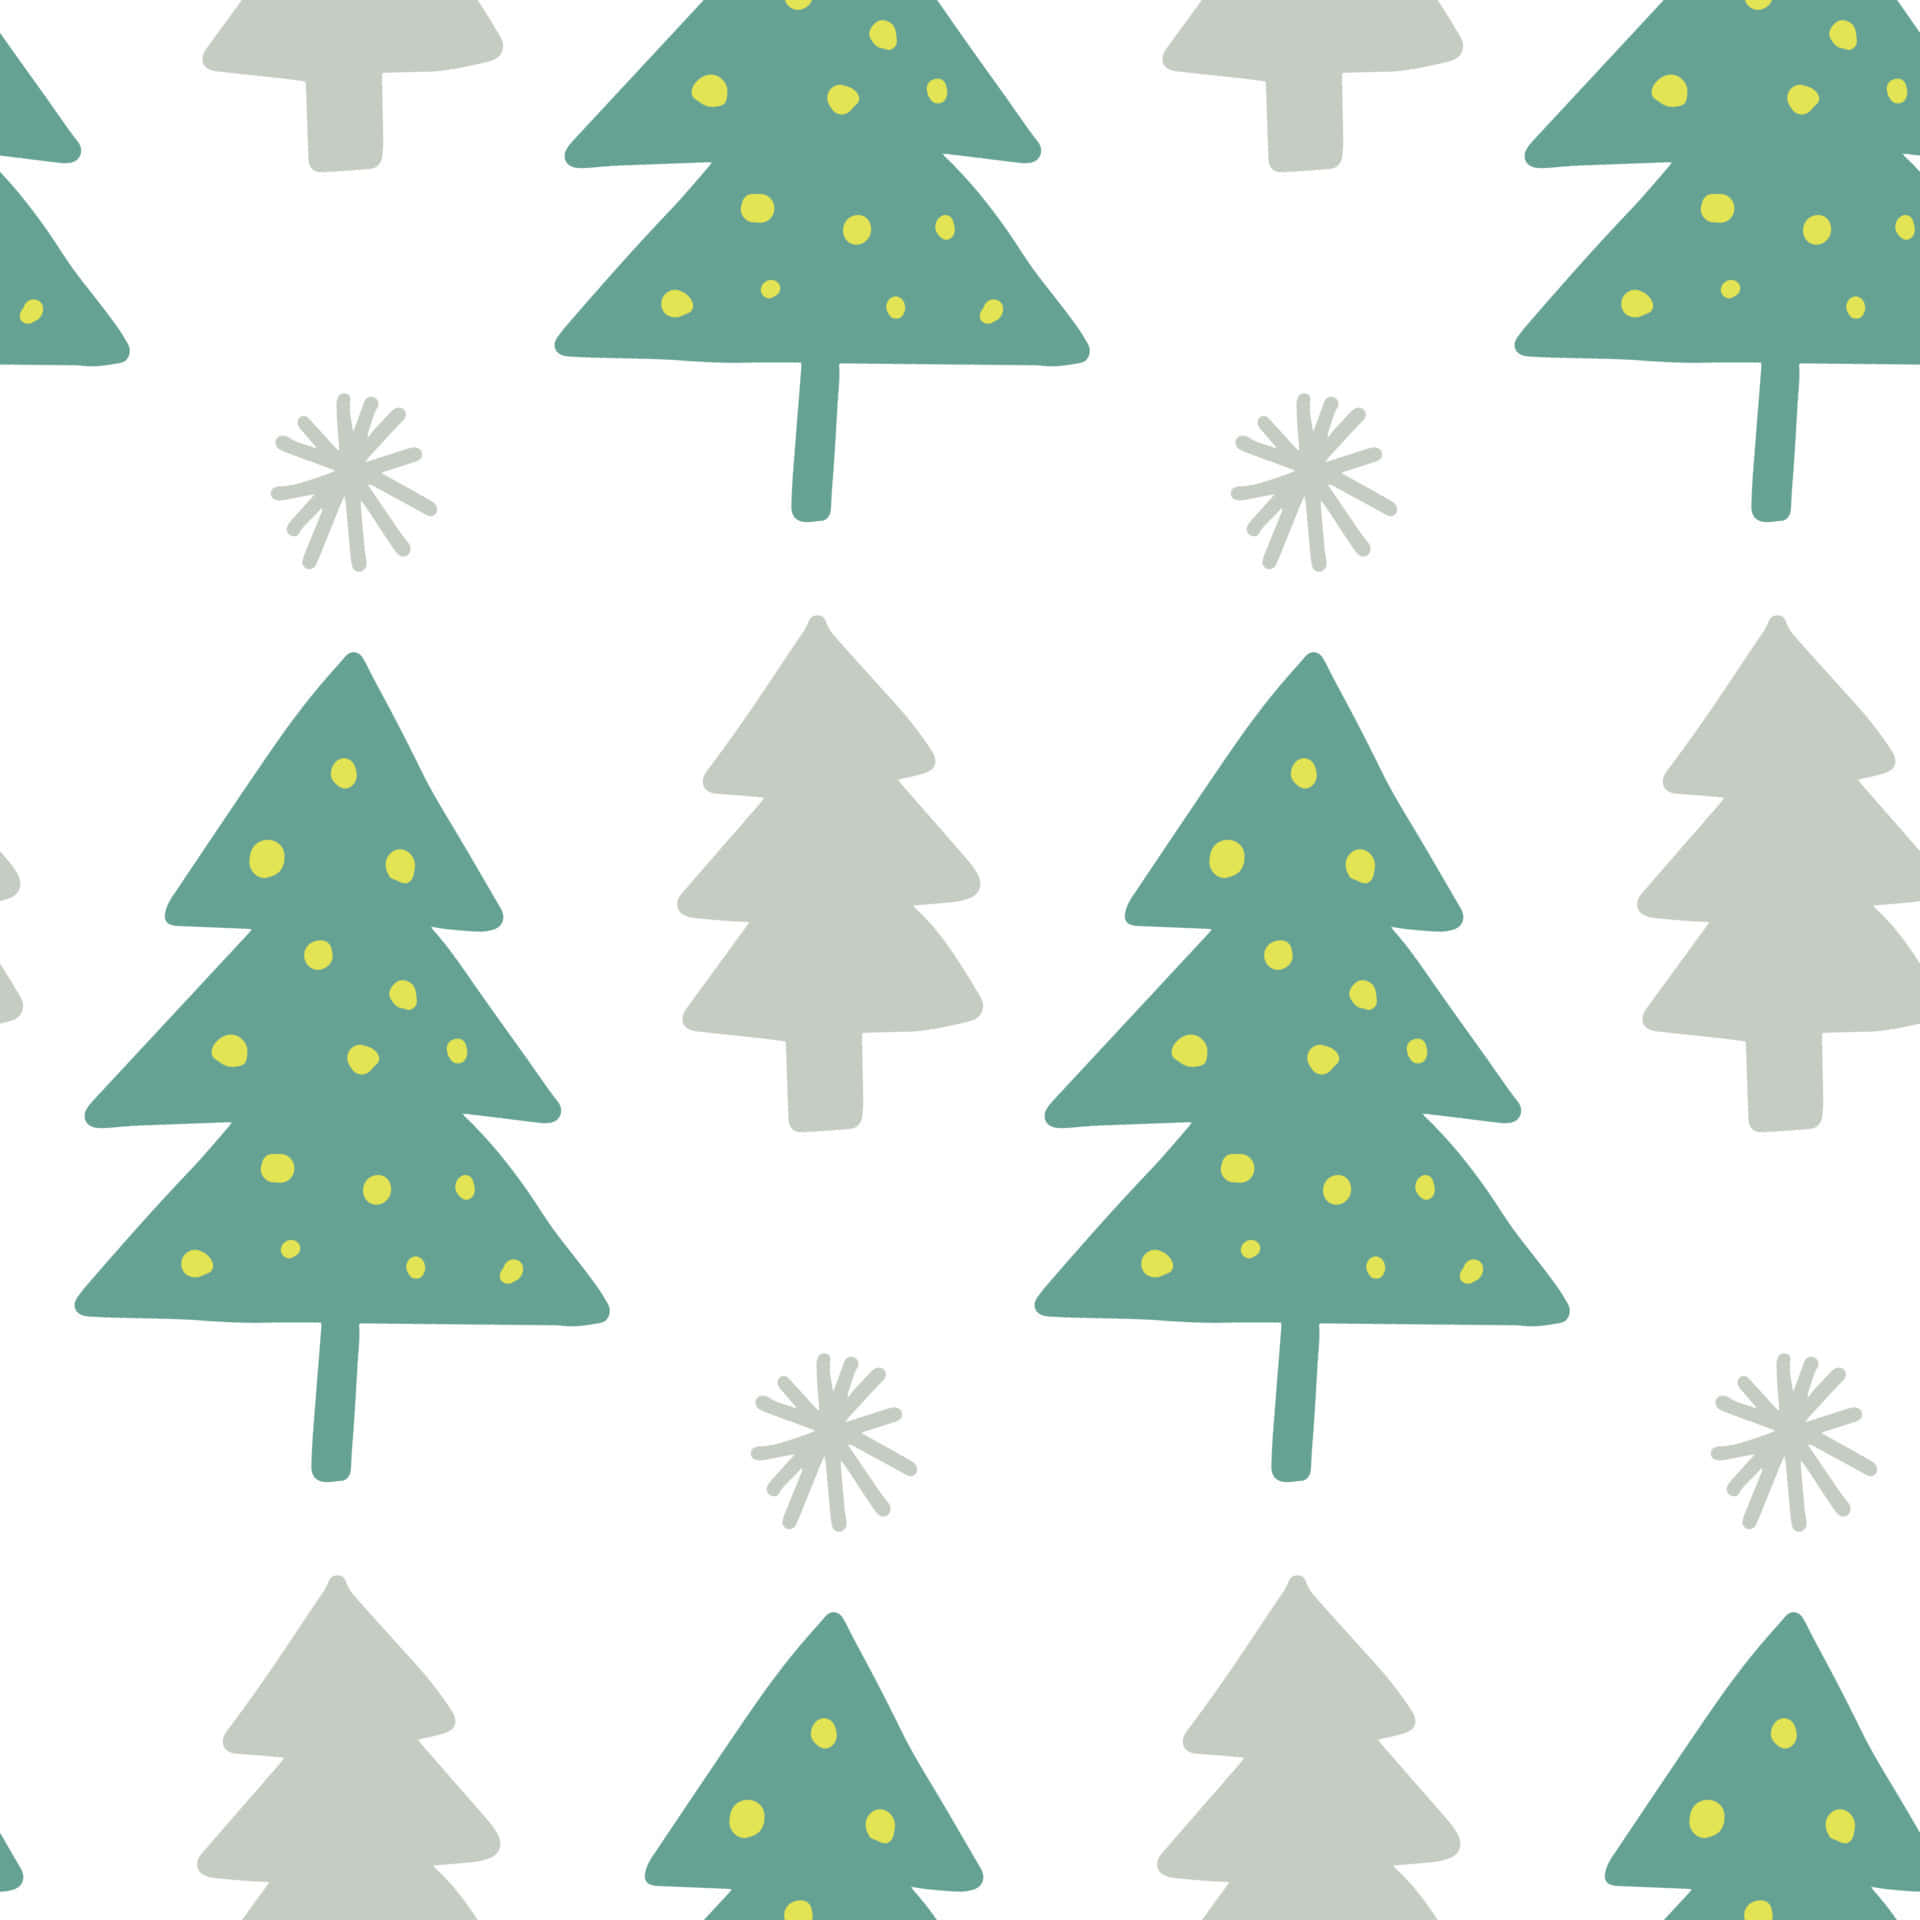 Feiernsie Die Freude Von Weihnachten, Indem Sie Einen Niedlichen Weihnachtsbaum Für Ihr Zuhause Bekommen. Wallpaper